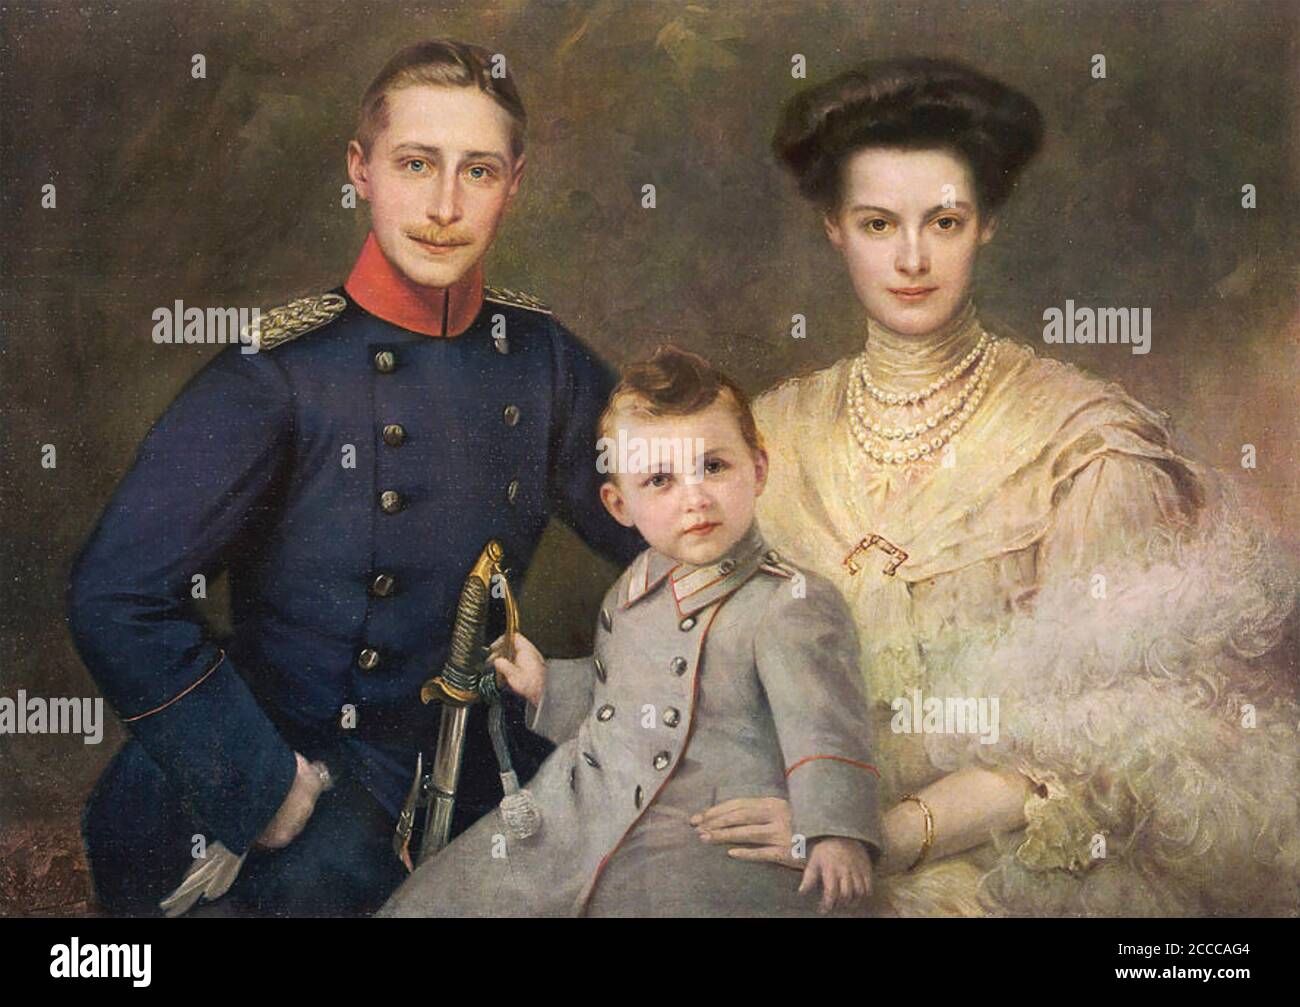 KRONPRINZ WILHELM (1882-1951) von Preußen, Sohn von Wilhelm I., mit seiner Frau Cecilie und ihrem Sohn Wilhelm im Jahre 1909 Stockfoto